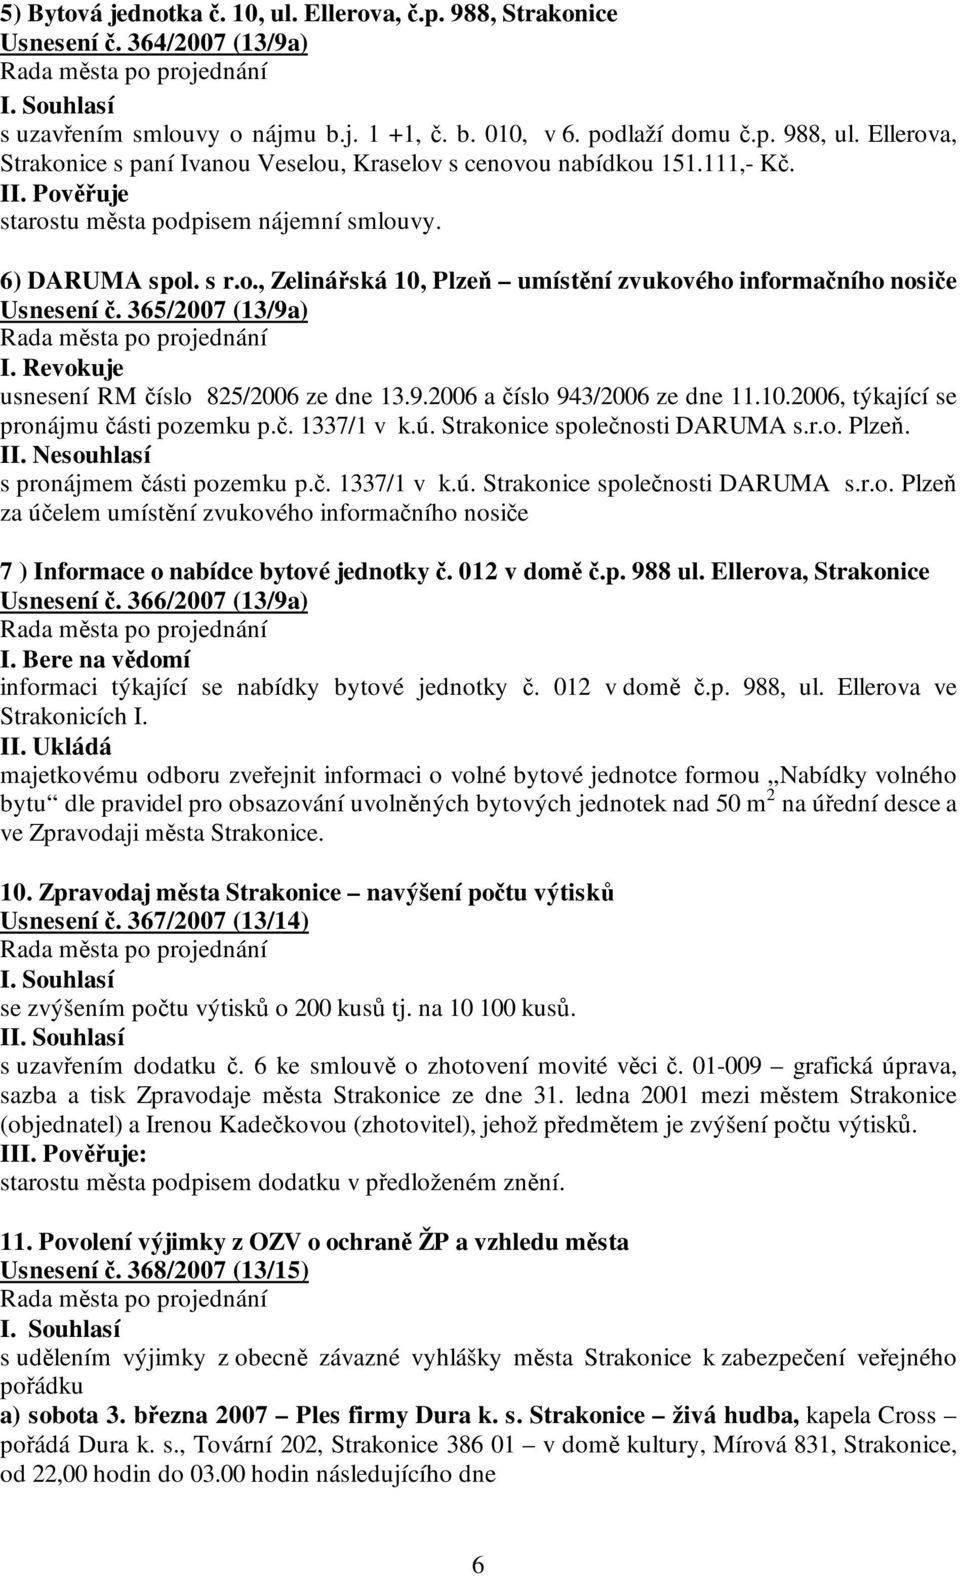 365/2007 (13/9a) I. Revokuje usnesení RM číslo 825/2006 ze dne 13.9.2006 a číslo 943/2006 ze dne 11.10.2006, týkající se pronájmu části pozemku p.č. 1337/1 v k.ú. Strakonice společnosti DARUMA s.r.o. Plzeň.